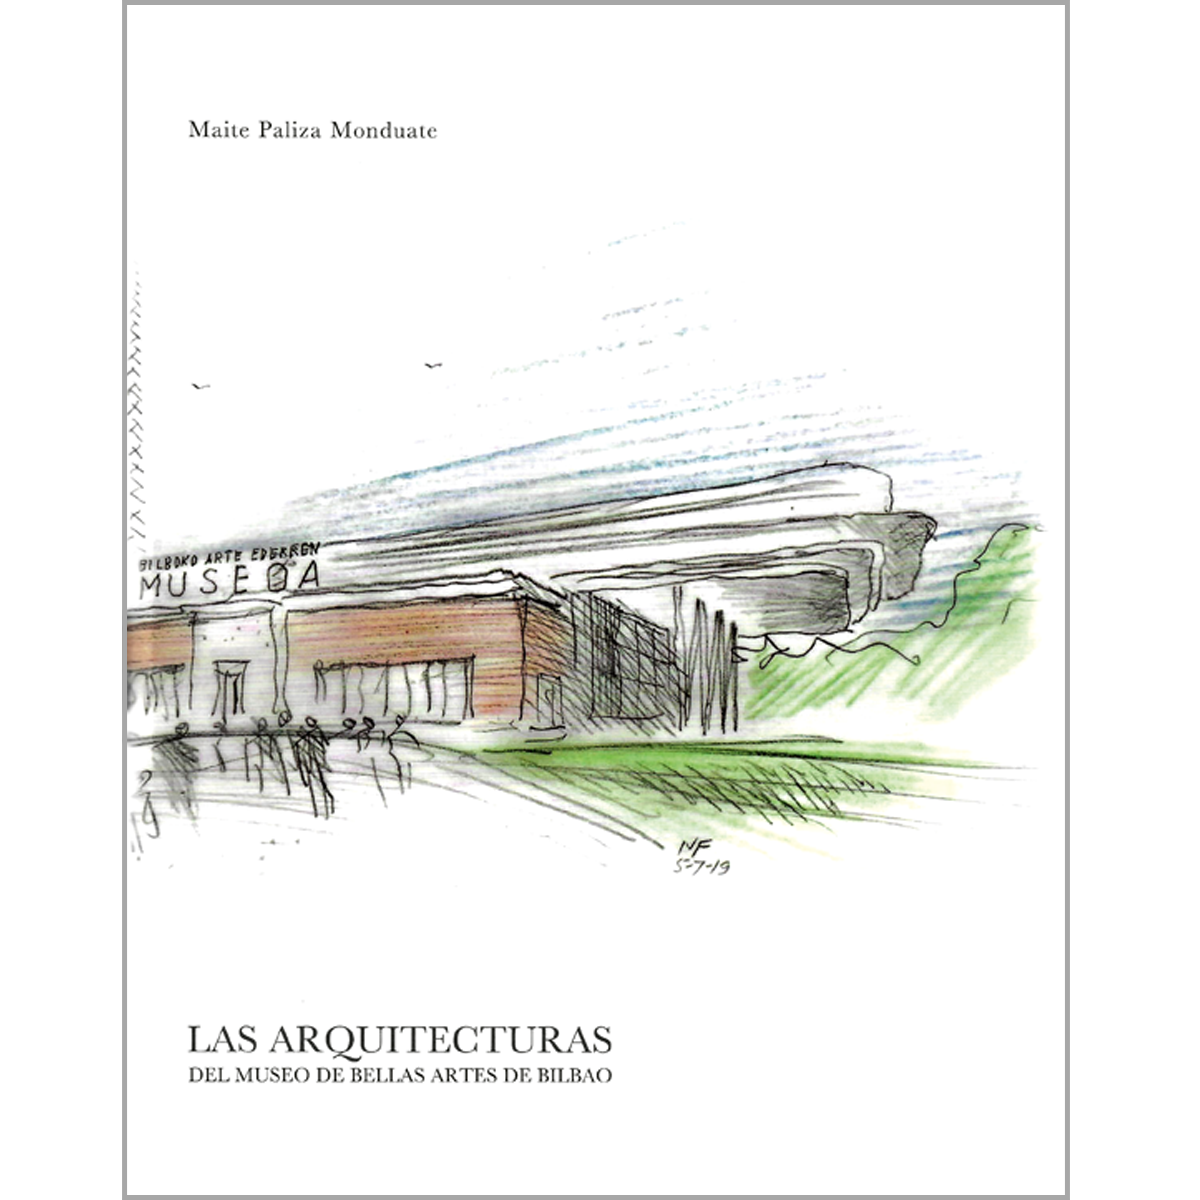 Imagen de portada del libro Las arquitecturas del Museo de Bellas Artes de Bilbao